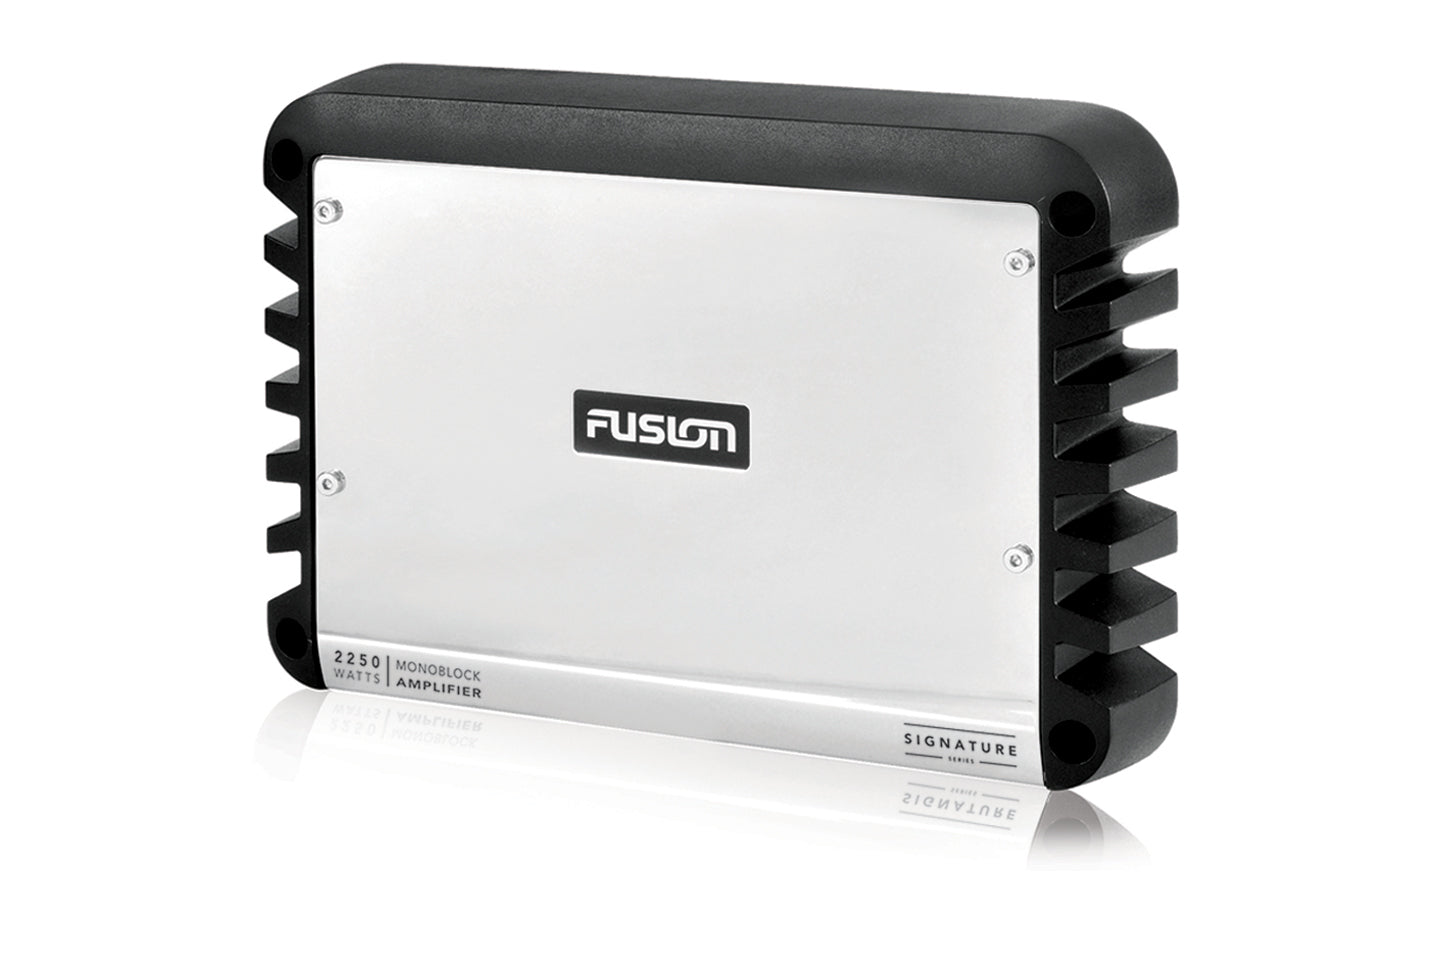 Fusion - SG-DA12250 / 010-01970-00 - Signature Series Monoblock Marine Amplifier